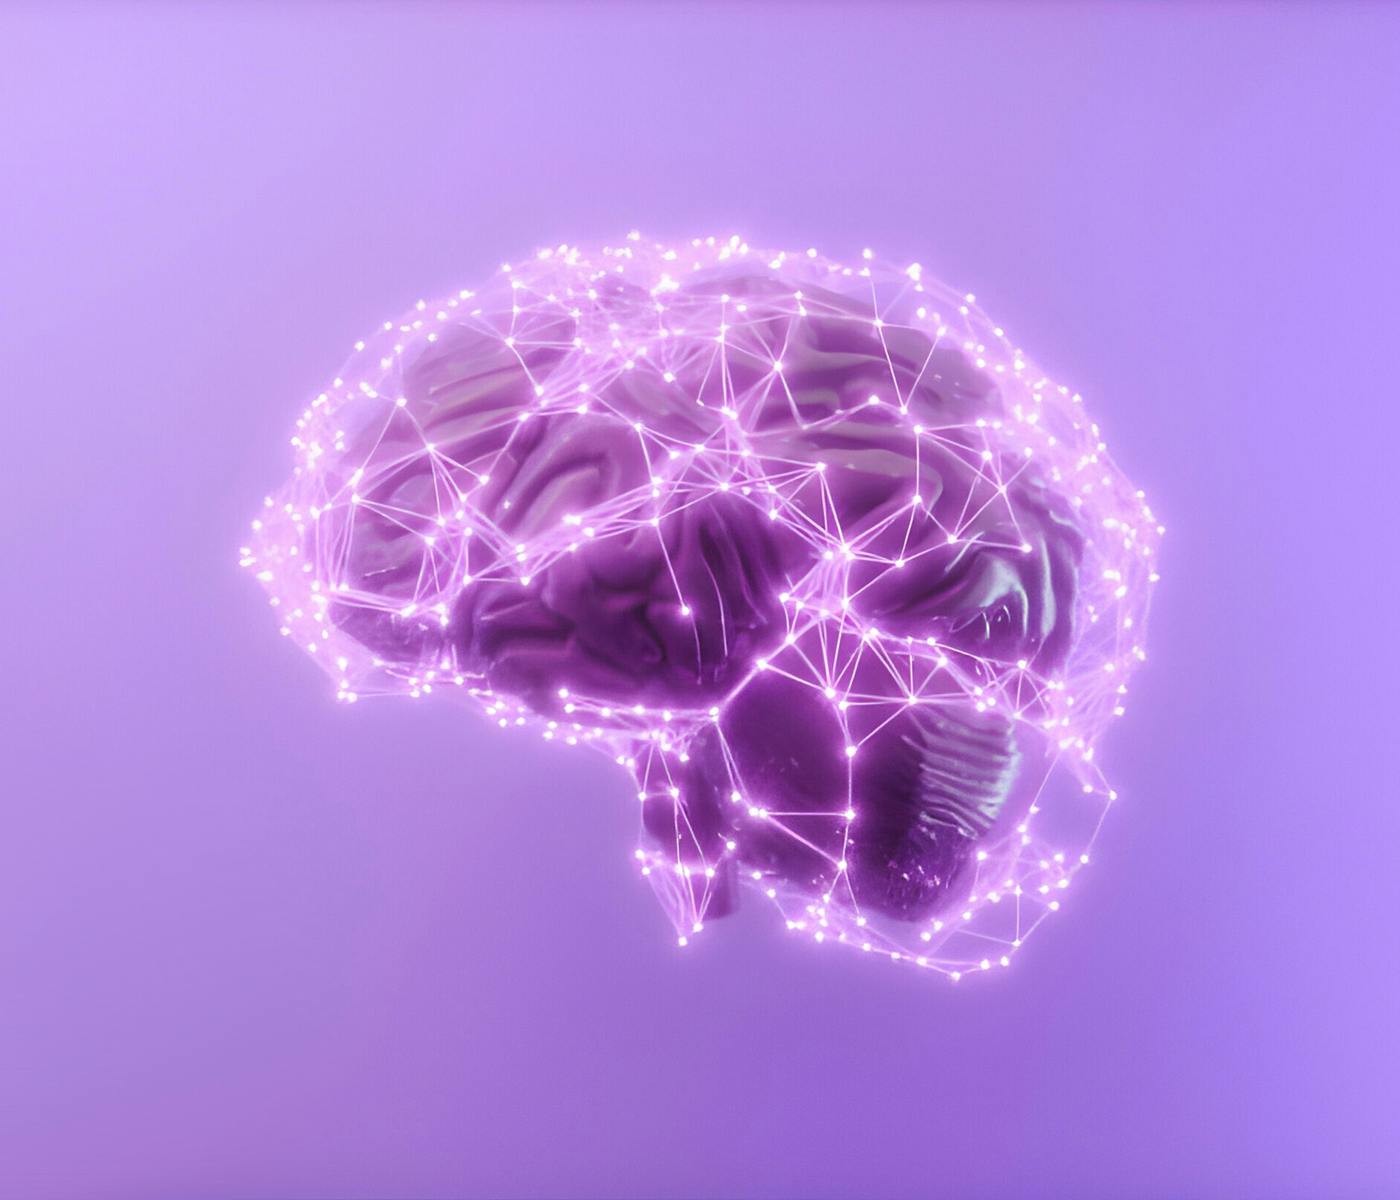 Rappresentazione grafica di un cervello umano e delle connessioni neuronali su sfondo viola.